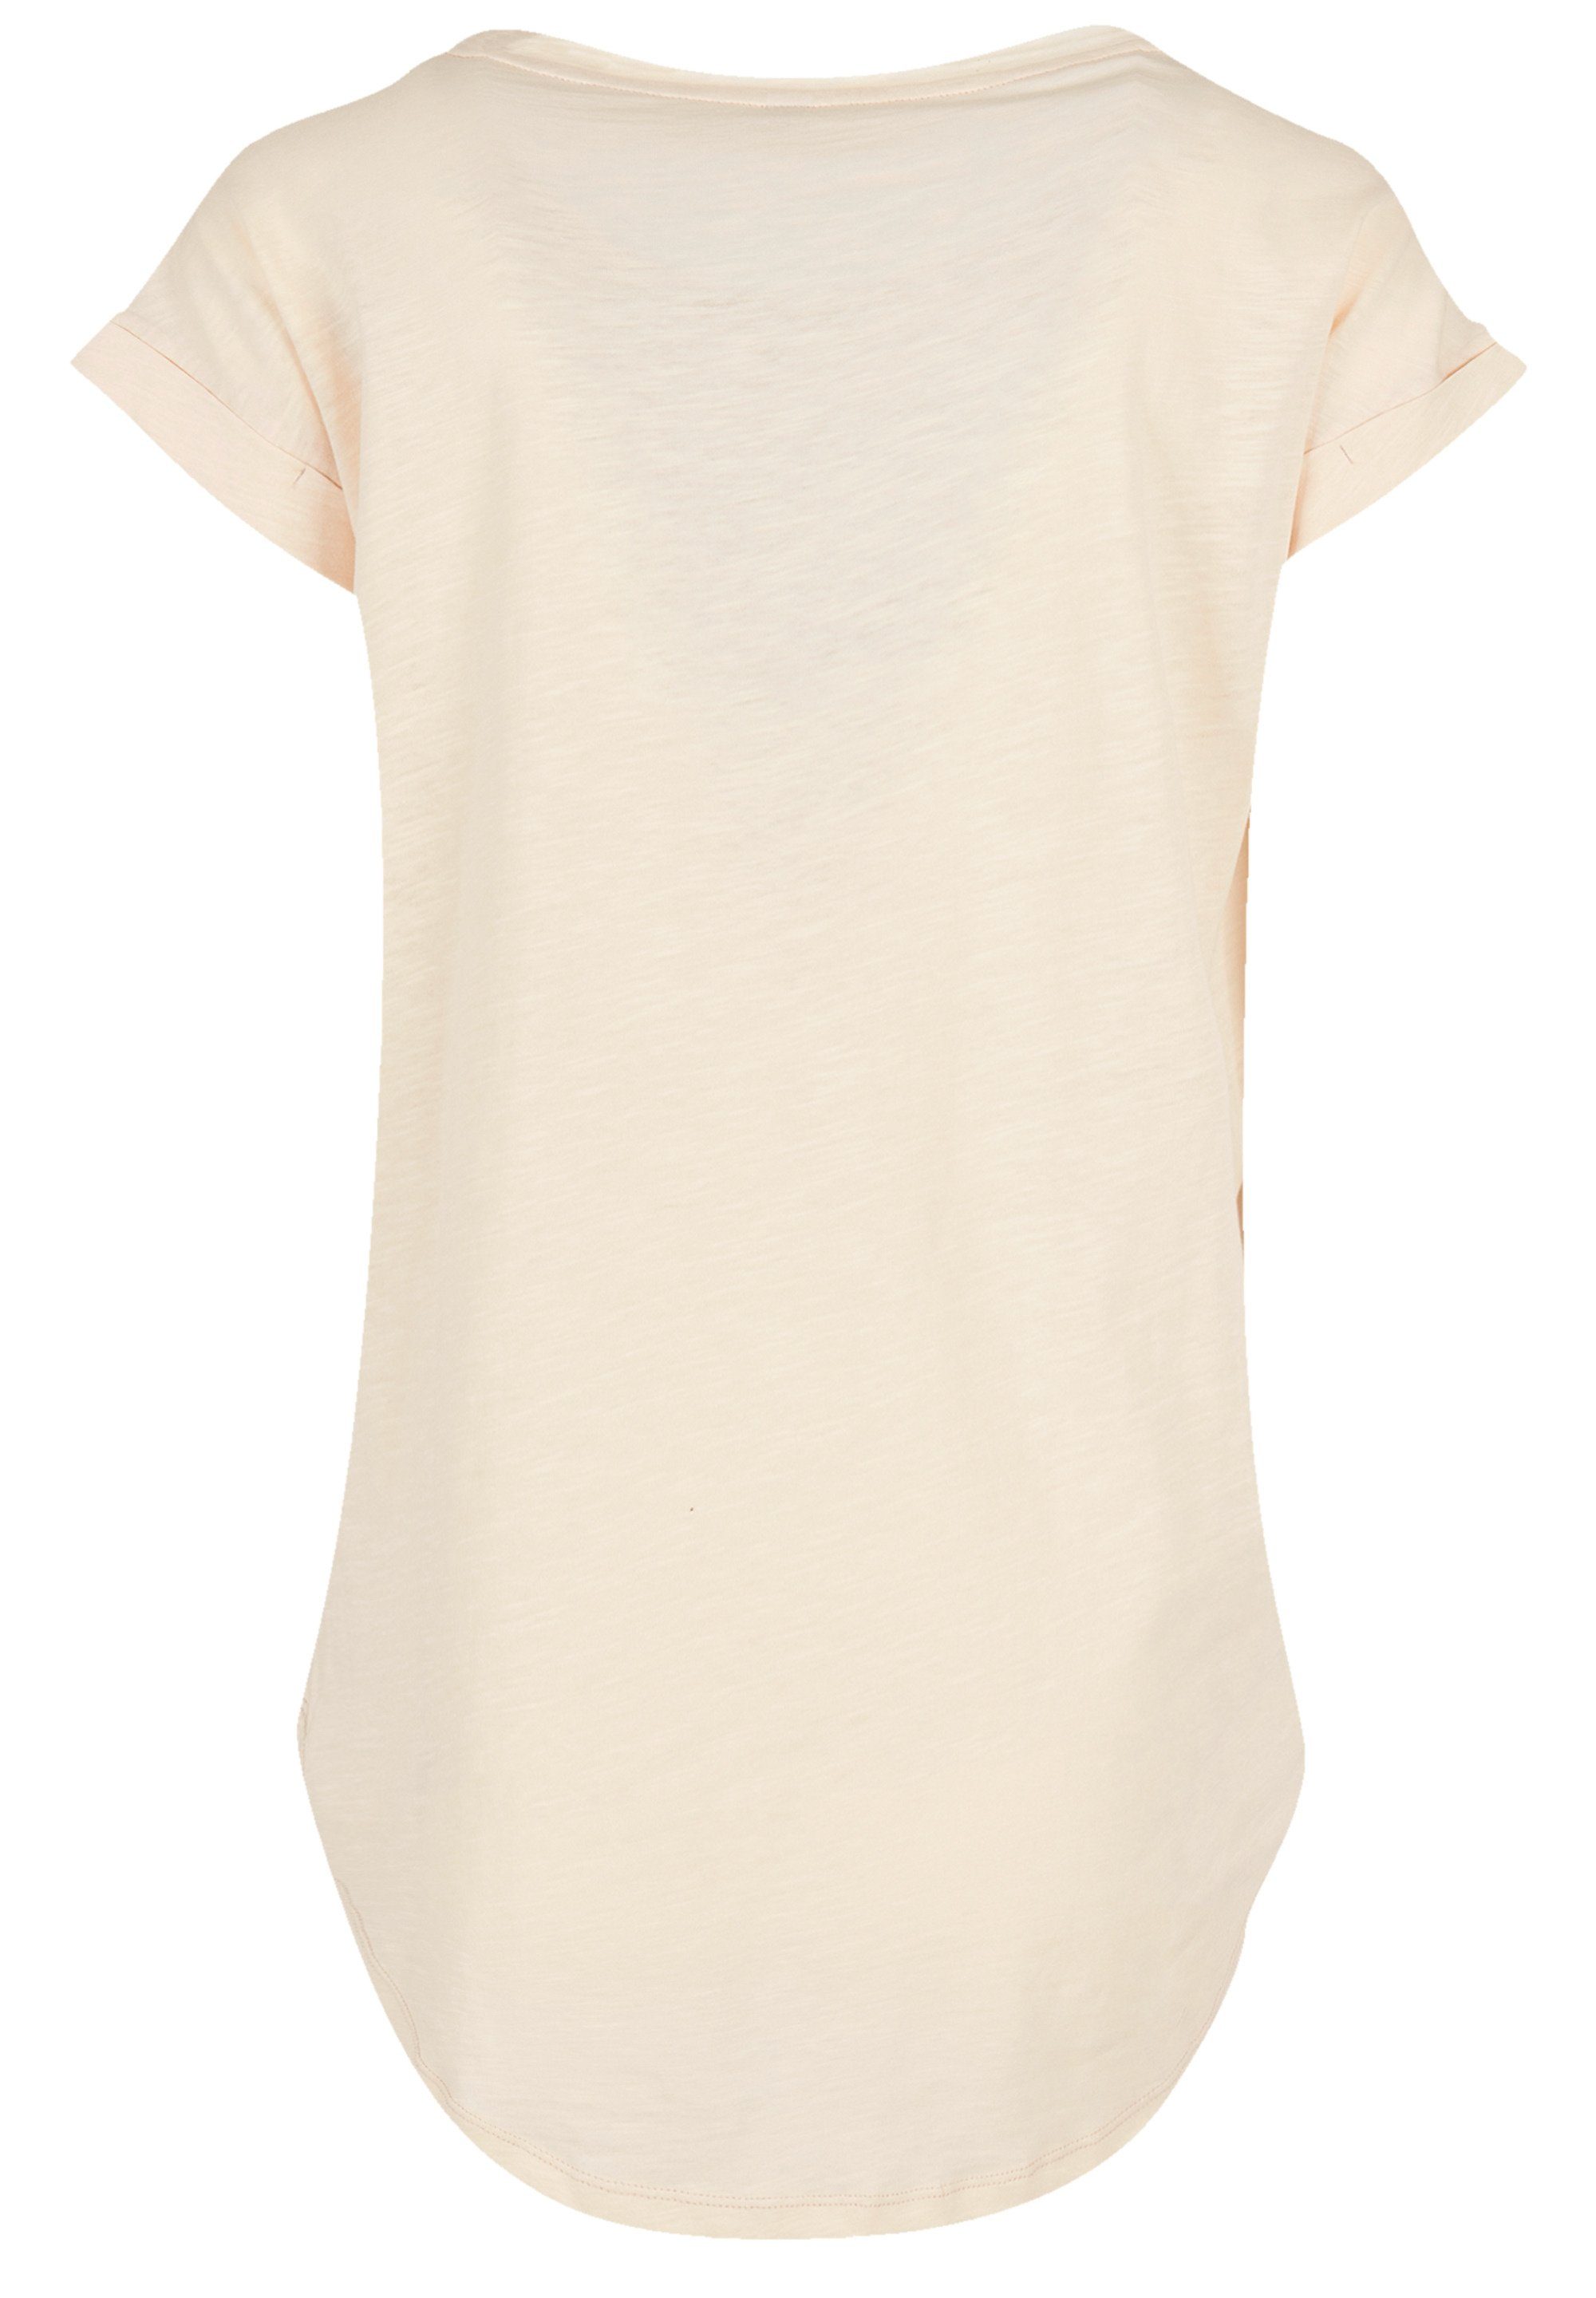 F4NT4STIC T-Shirt The Jam Band Classic Logo Premium Qualität, Hinten extra  lang geschnittenes Damen T-Shirt | Hoodies